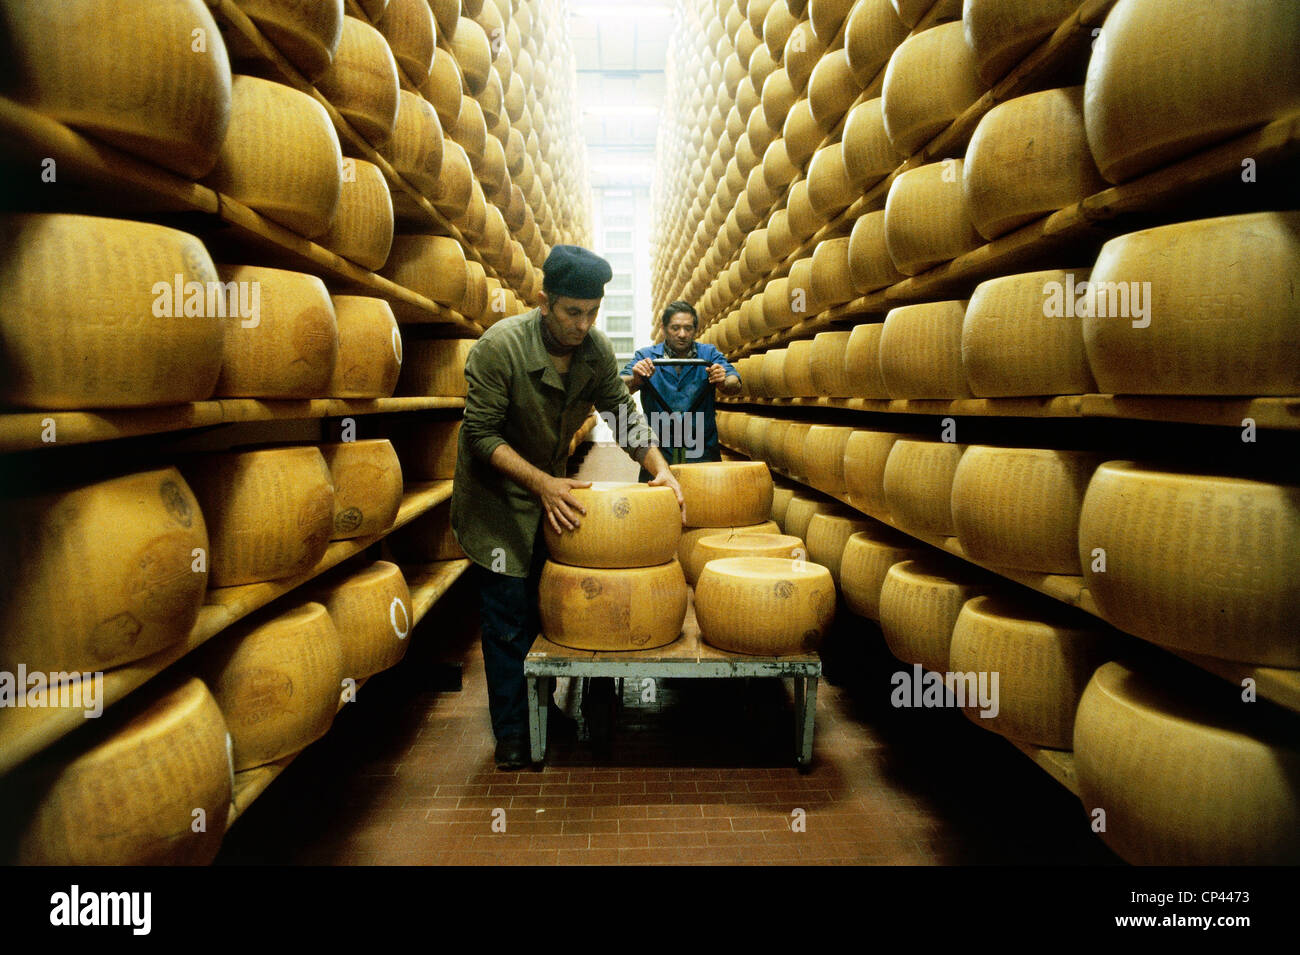 Emilia Romagna - Producción de Parmigiano Reggiano. Control de la maduración del queso. Foto de stock